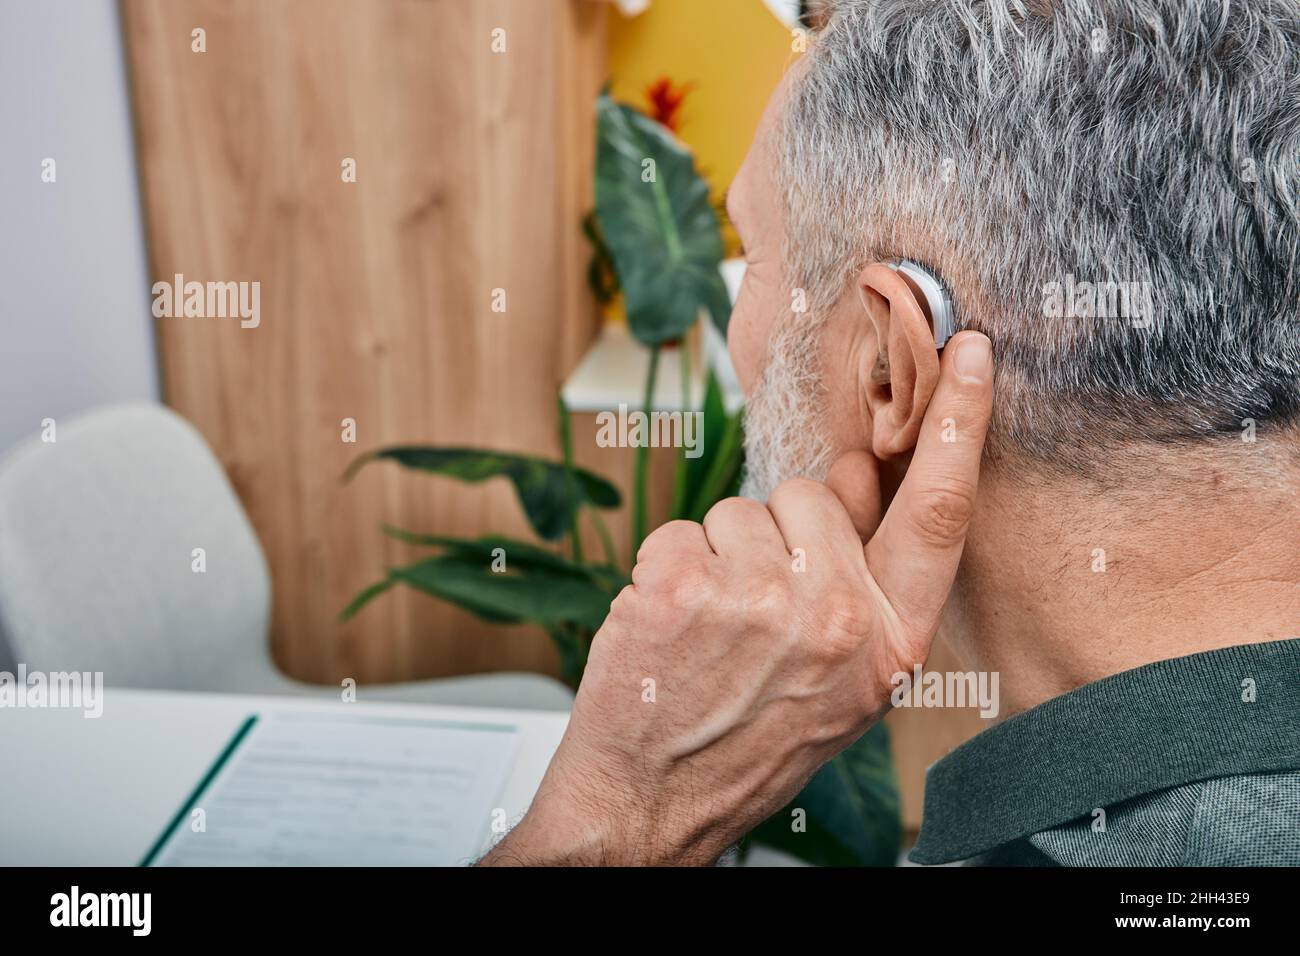 Solutions auditives pour les personnes âgées souffrant de surdité.L'homme plus âgé aux cheveux gris règle son aide auditive derrière l'oreille en appuyant sur le bouton de réglage avec son doigt Banque D'Images